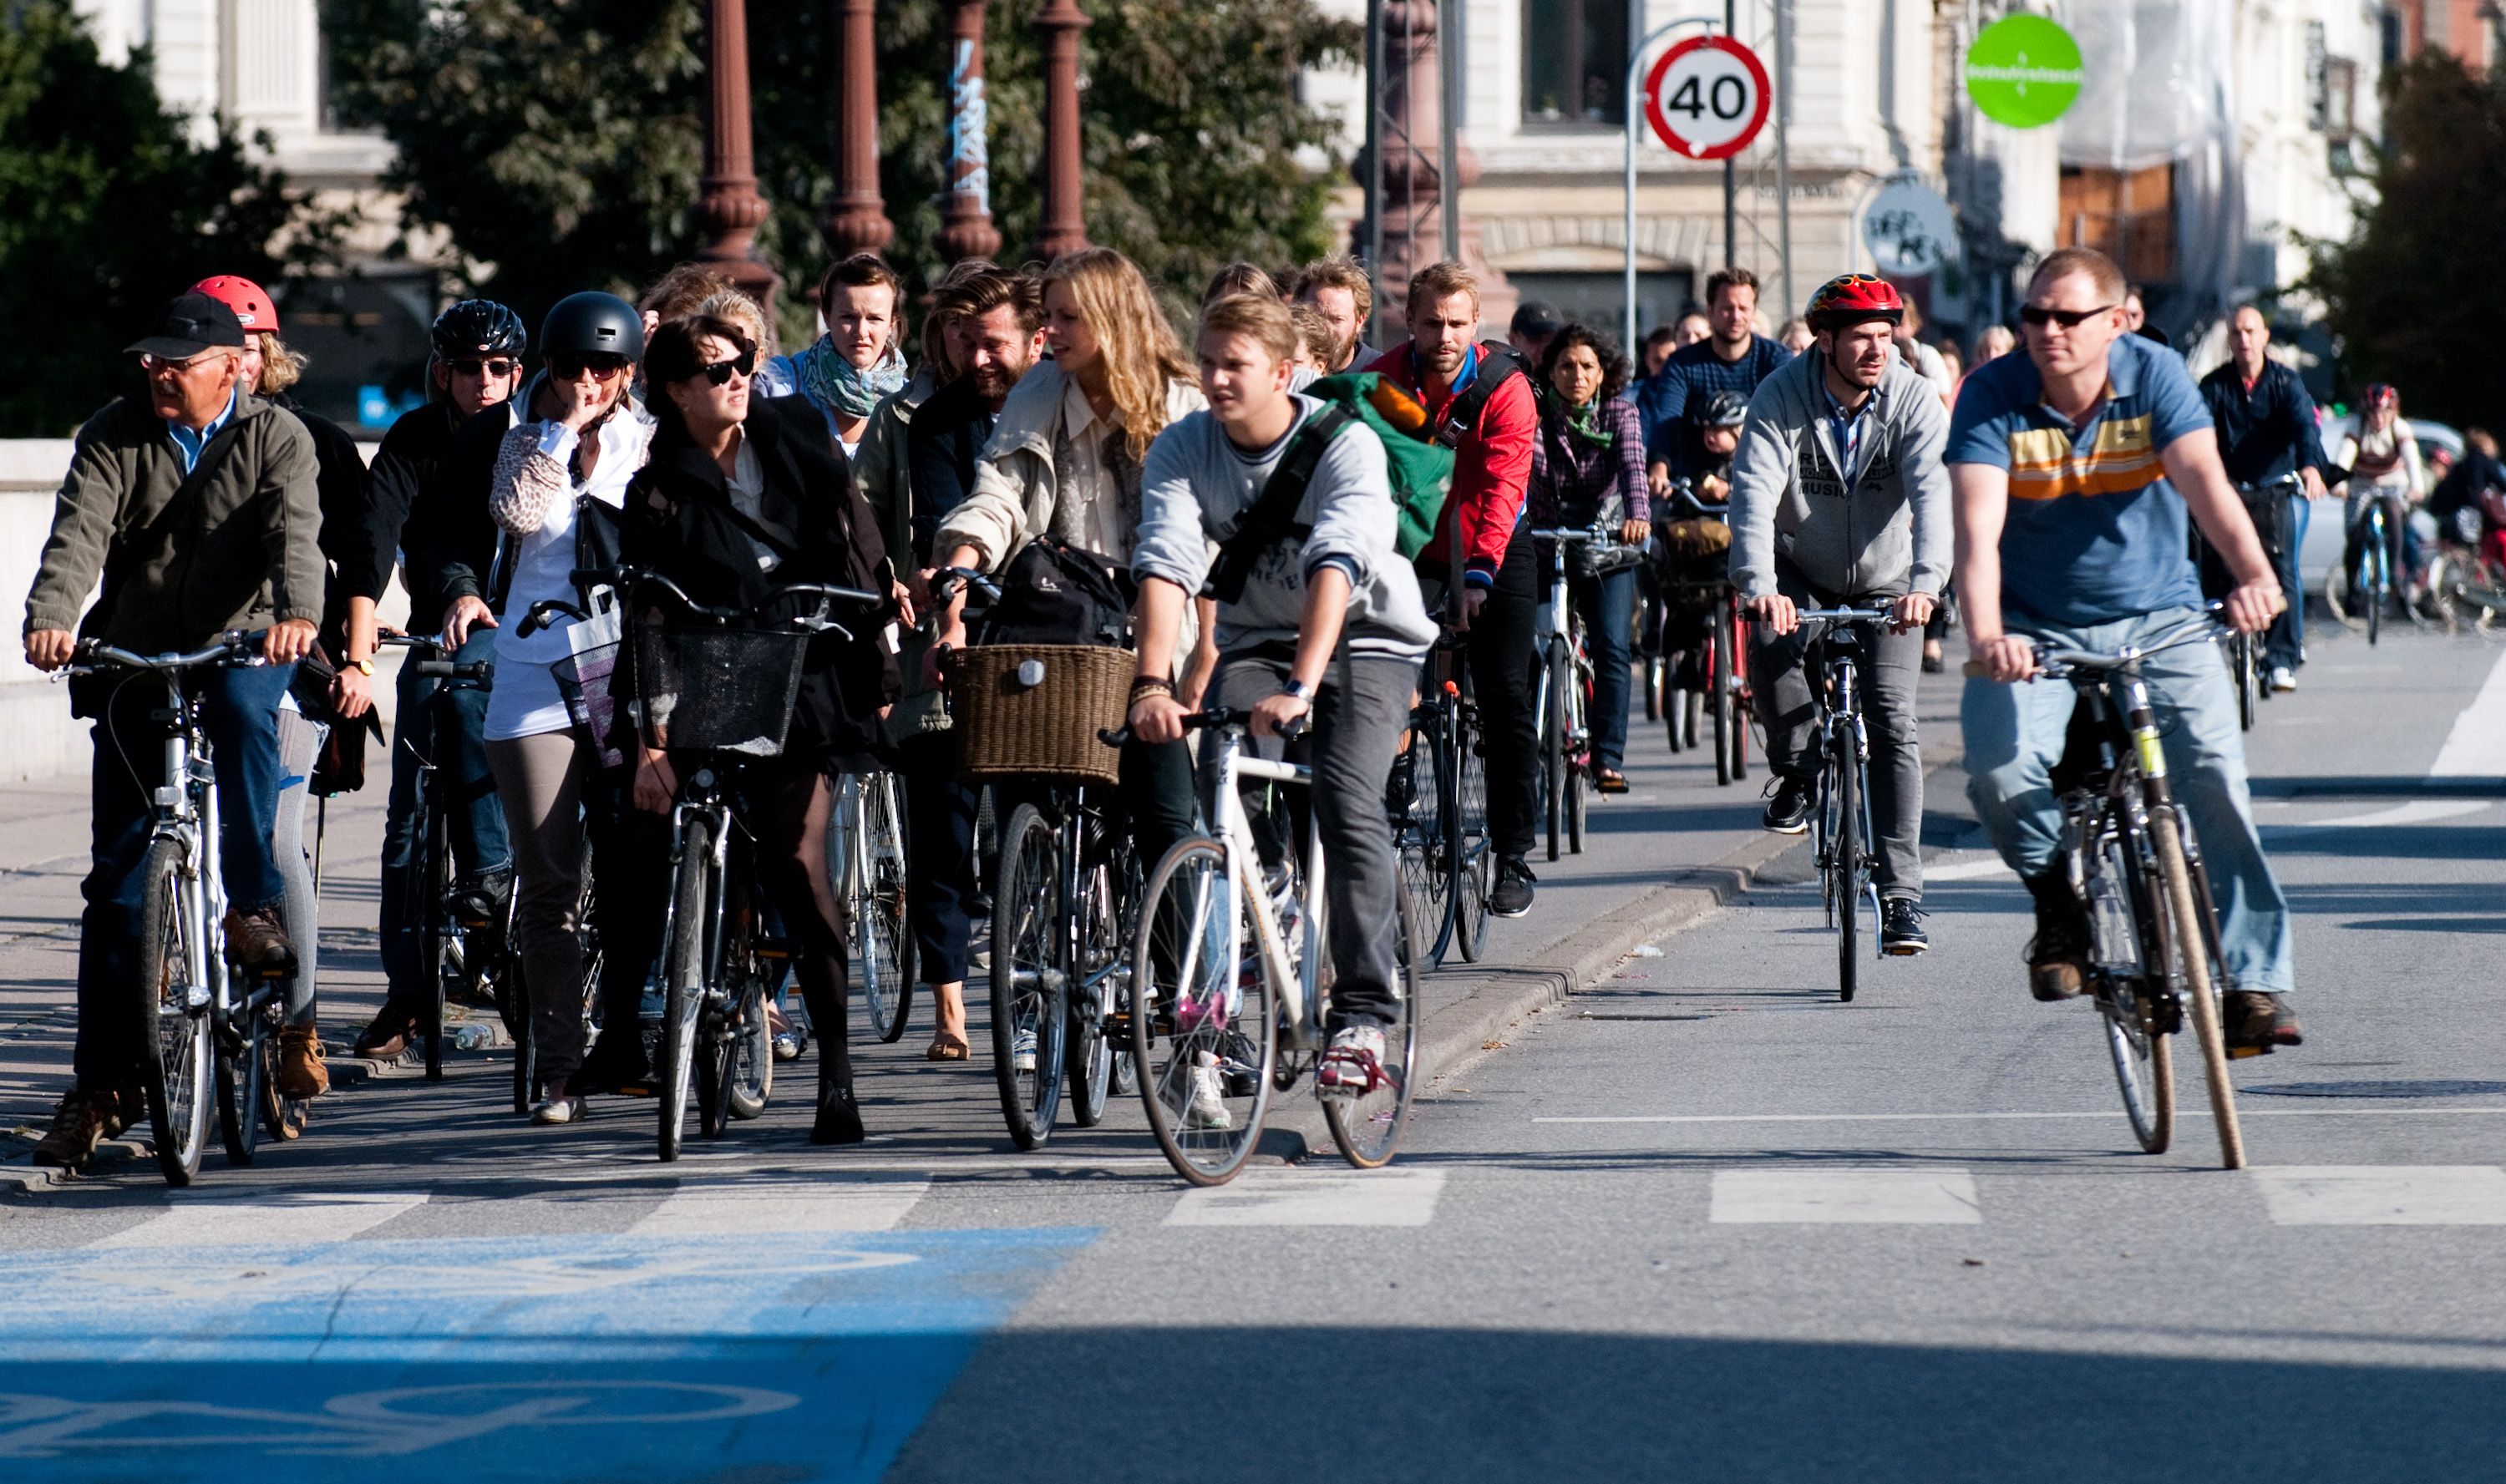 Copenhagen eyeing wider bicycle paths